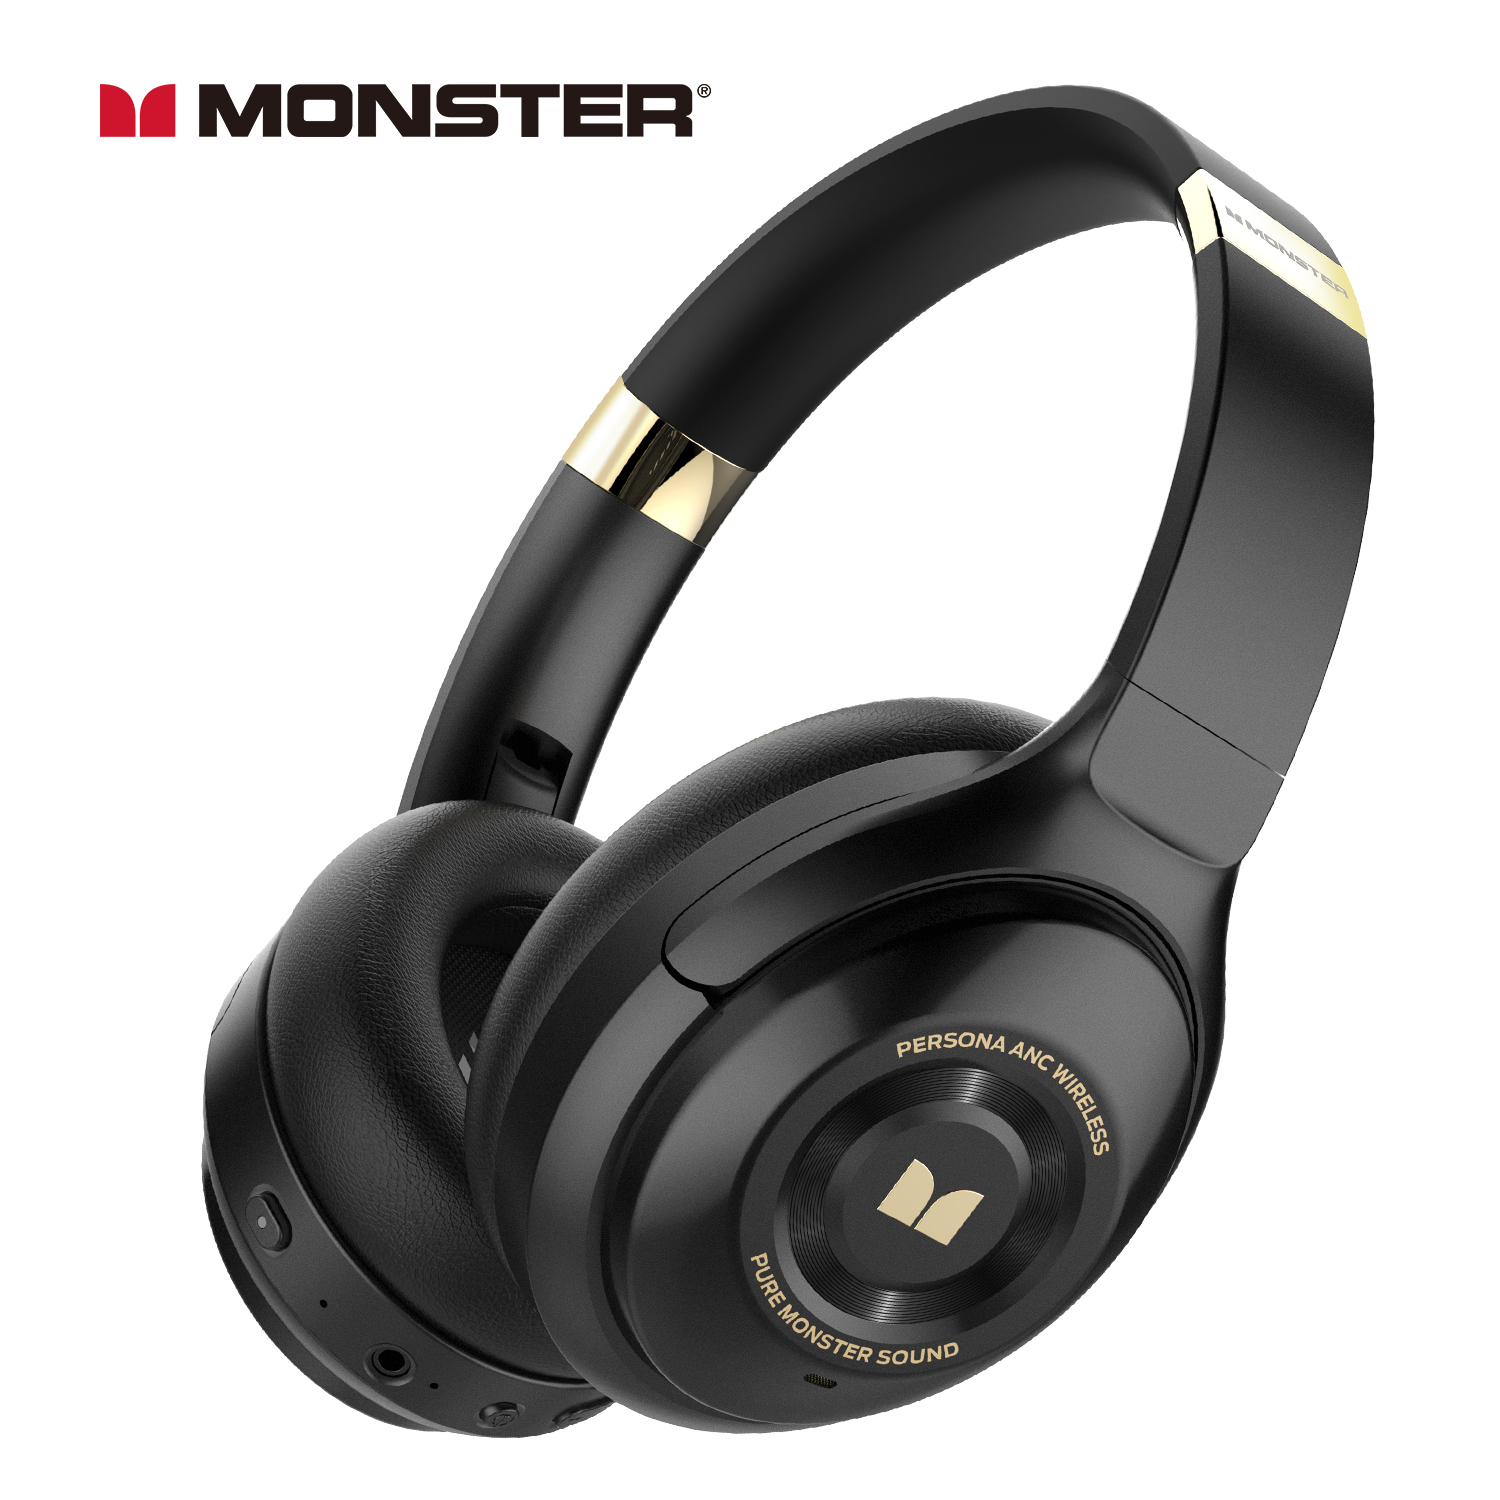 Monster Headphones Australia